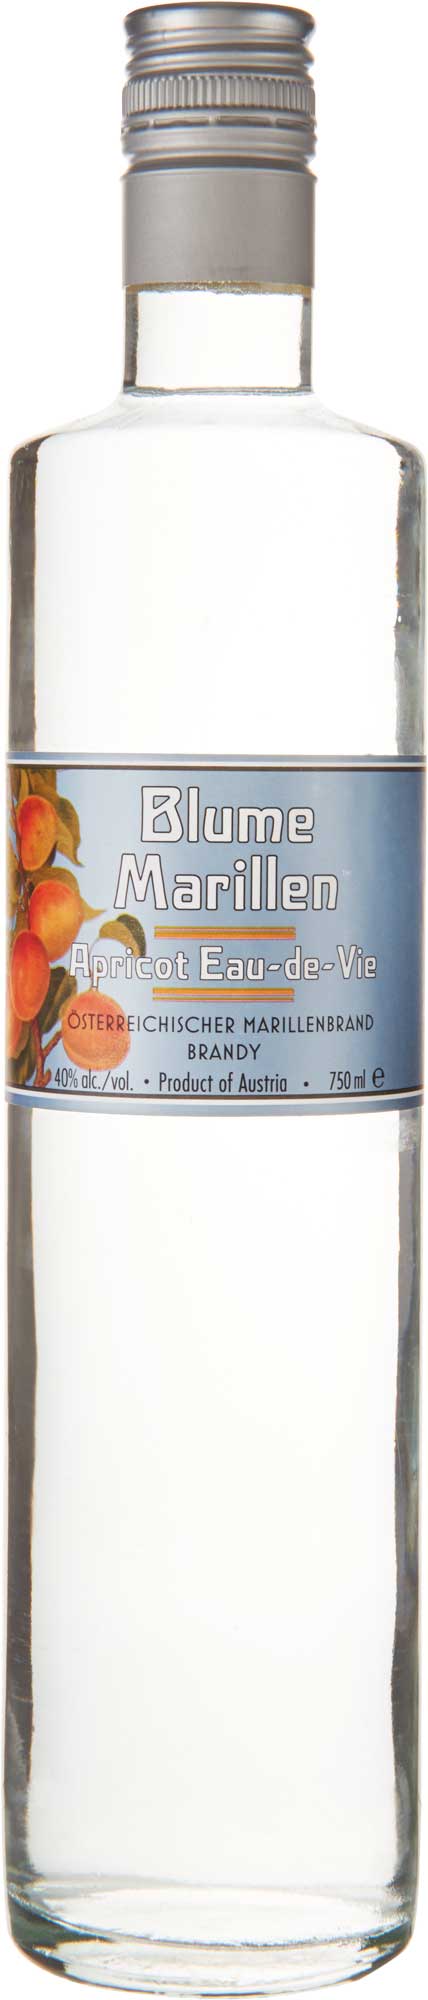 Blume Marillen - Apricot Eau-de-Vie (750ml) (750ml)